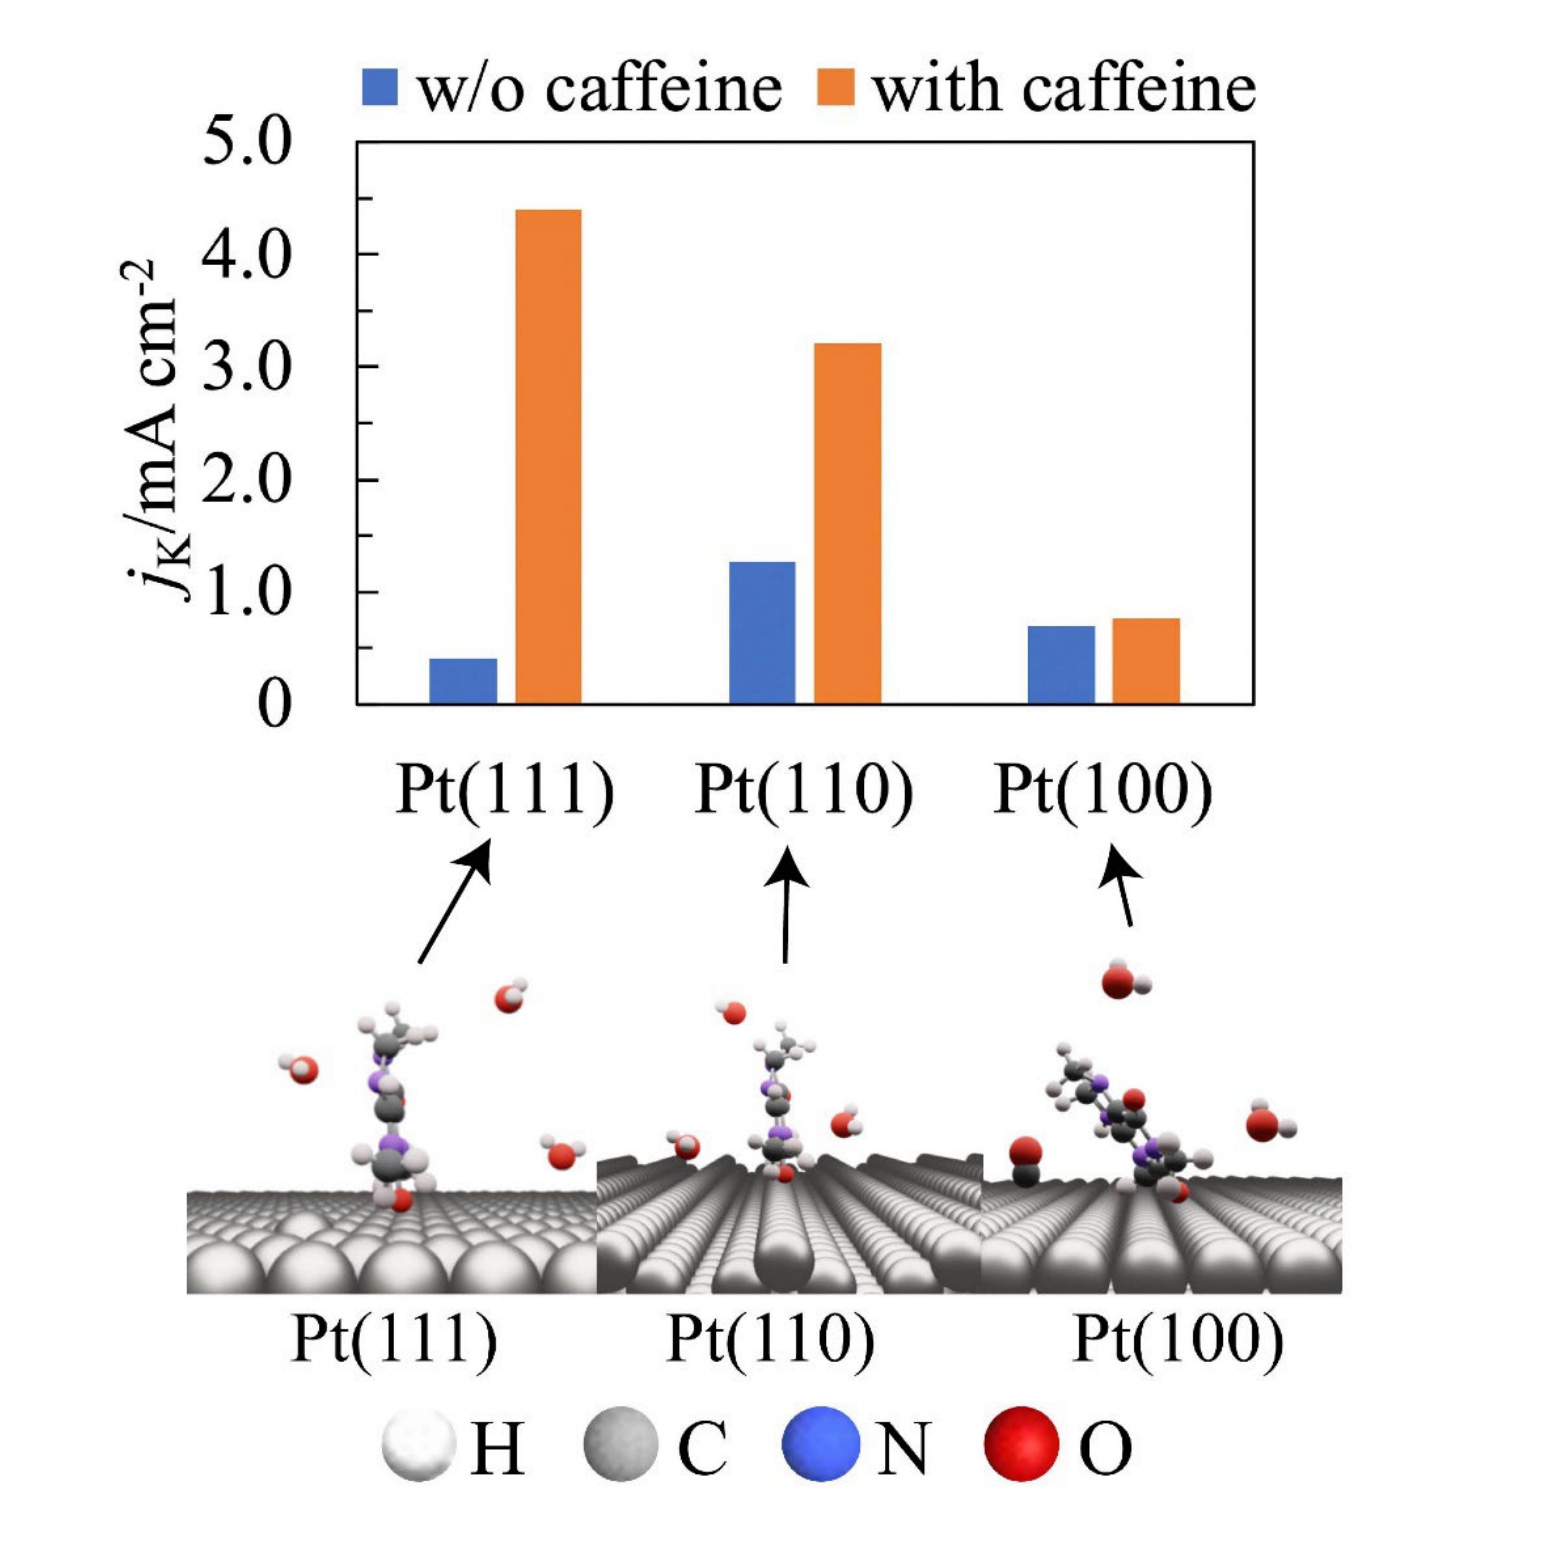 咖啡因對鉑 (Pt) 電極氧氣還原反應活性的影響。定義良好的 Pt 單晶電極上吸附的咖啡因結構以及咖啡因改性前後燃料電池空氣電極的活性。圖片來源：千葉大學星野長宏教授 